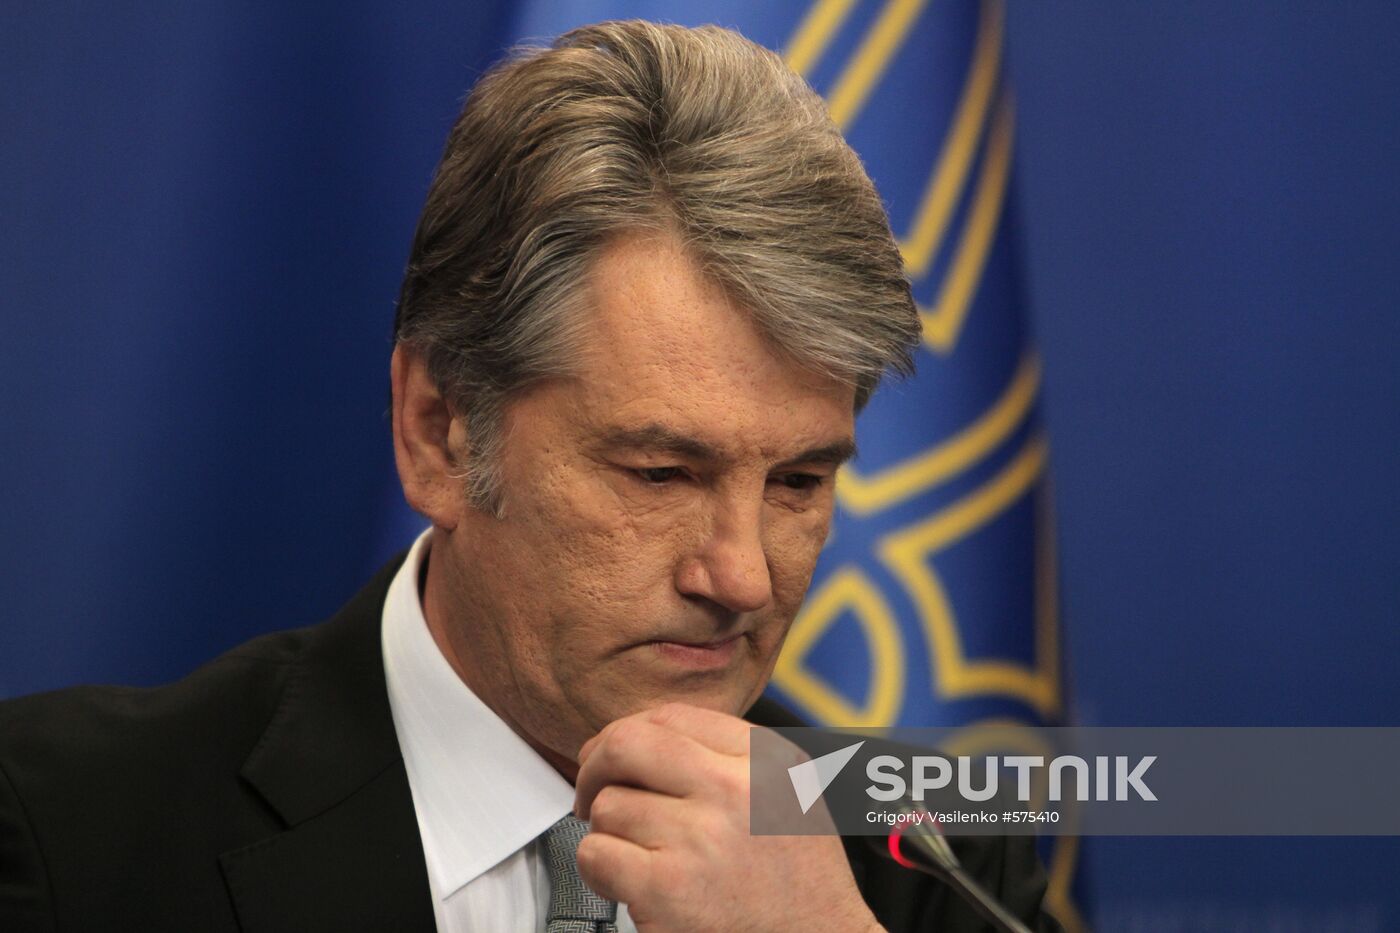 News conference with Viktor Yushchenko